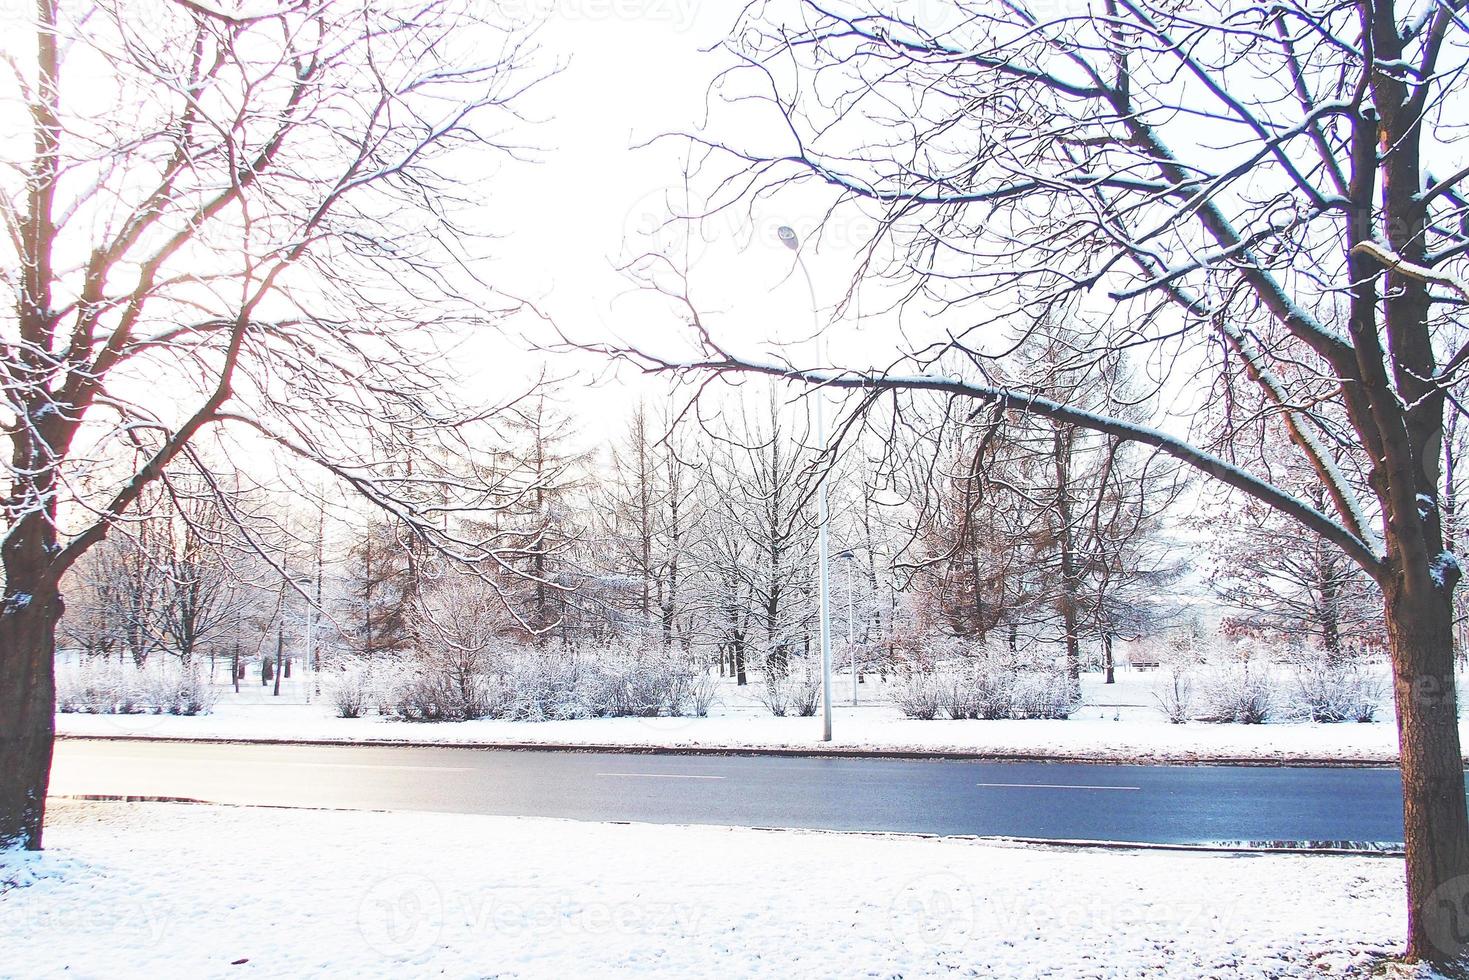 inverno panorama com fresco neve e árvores foto